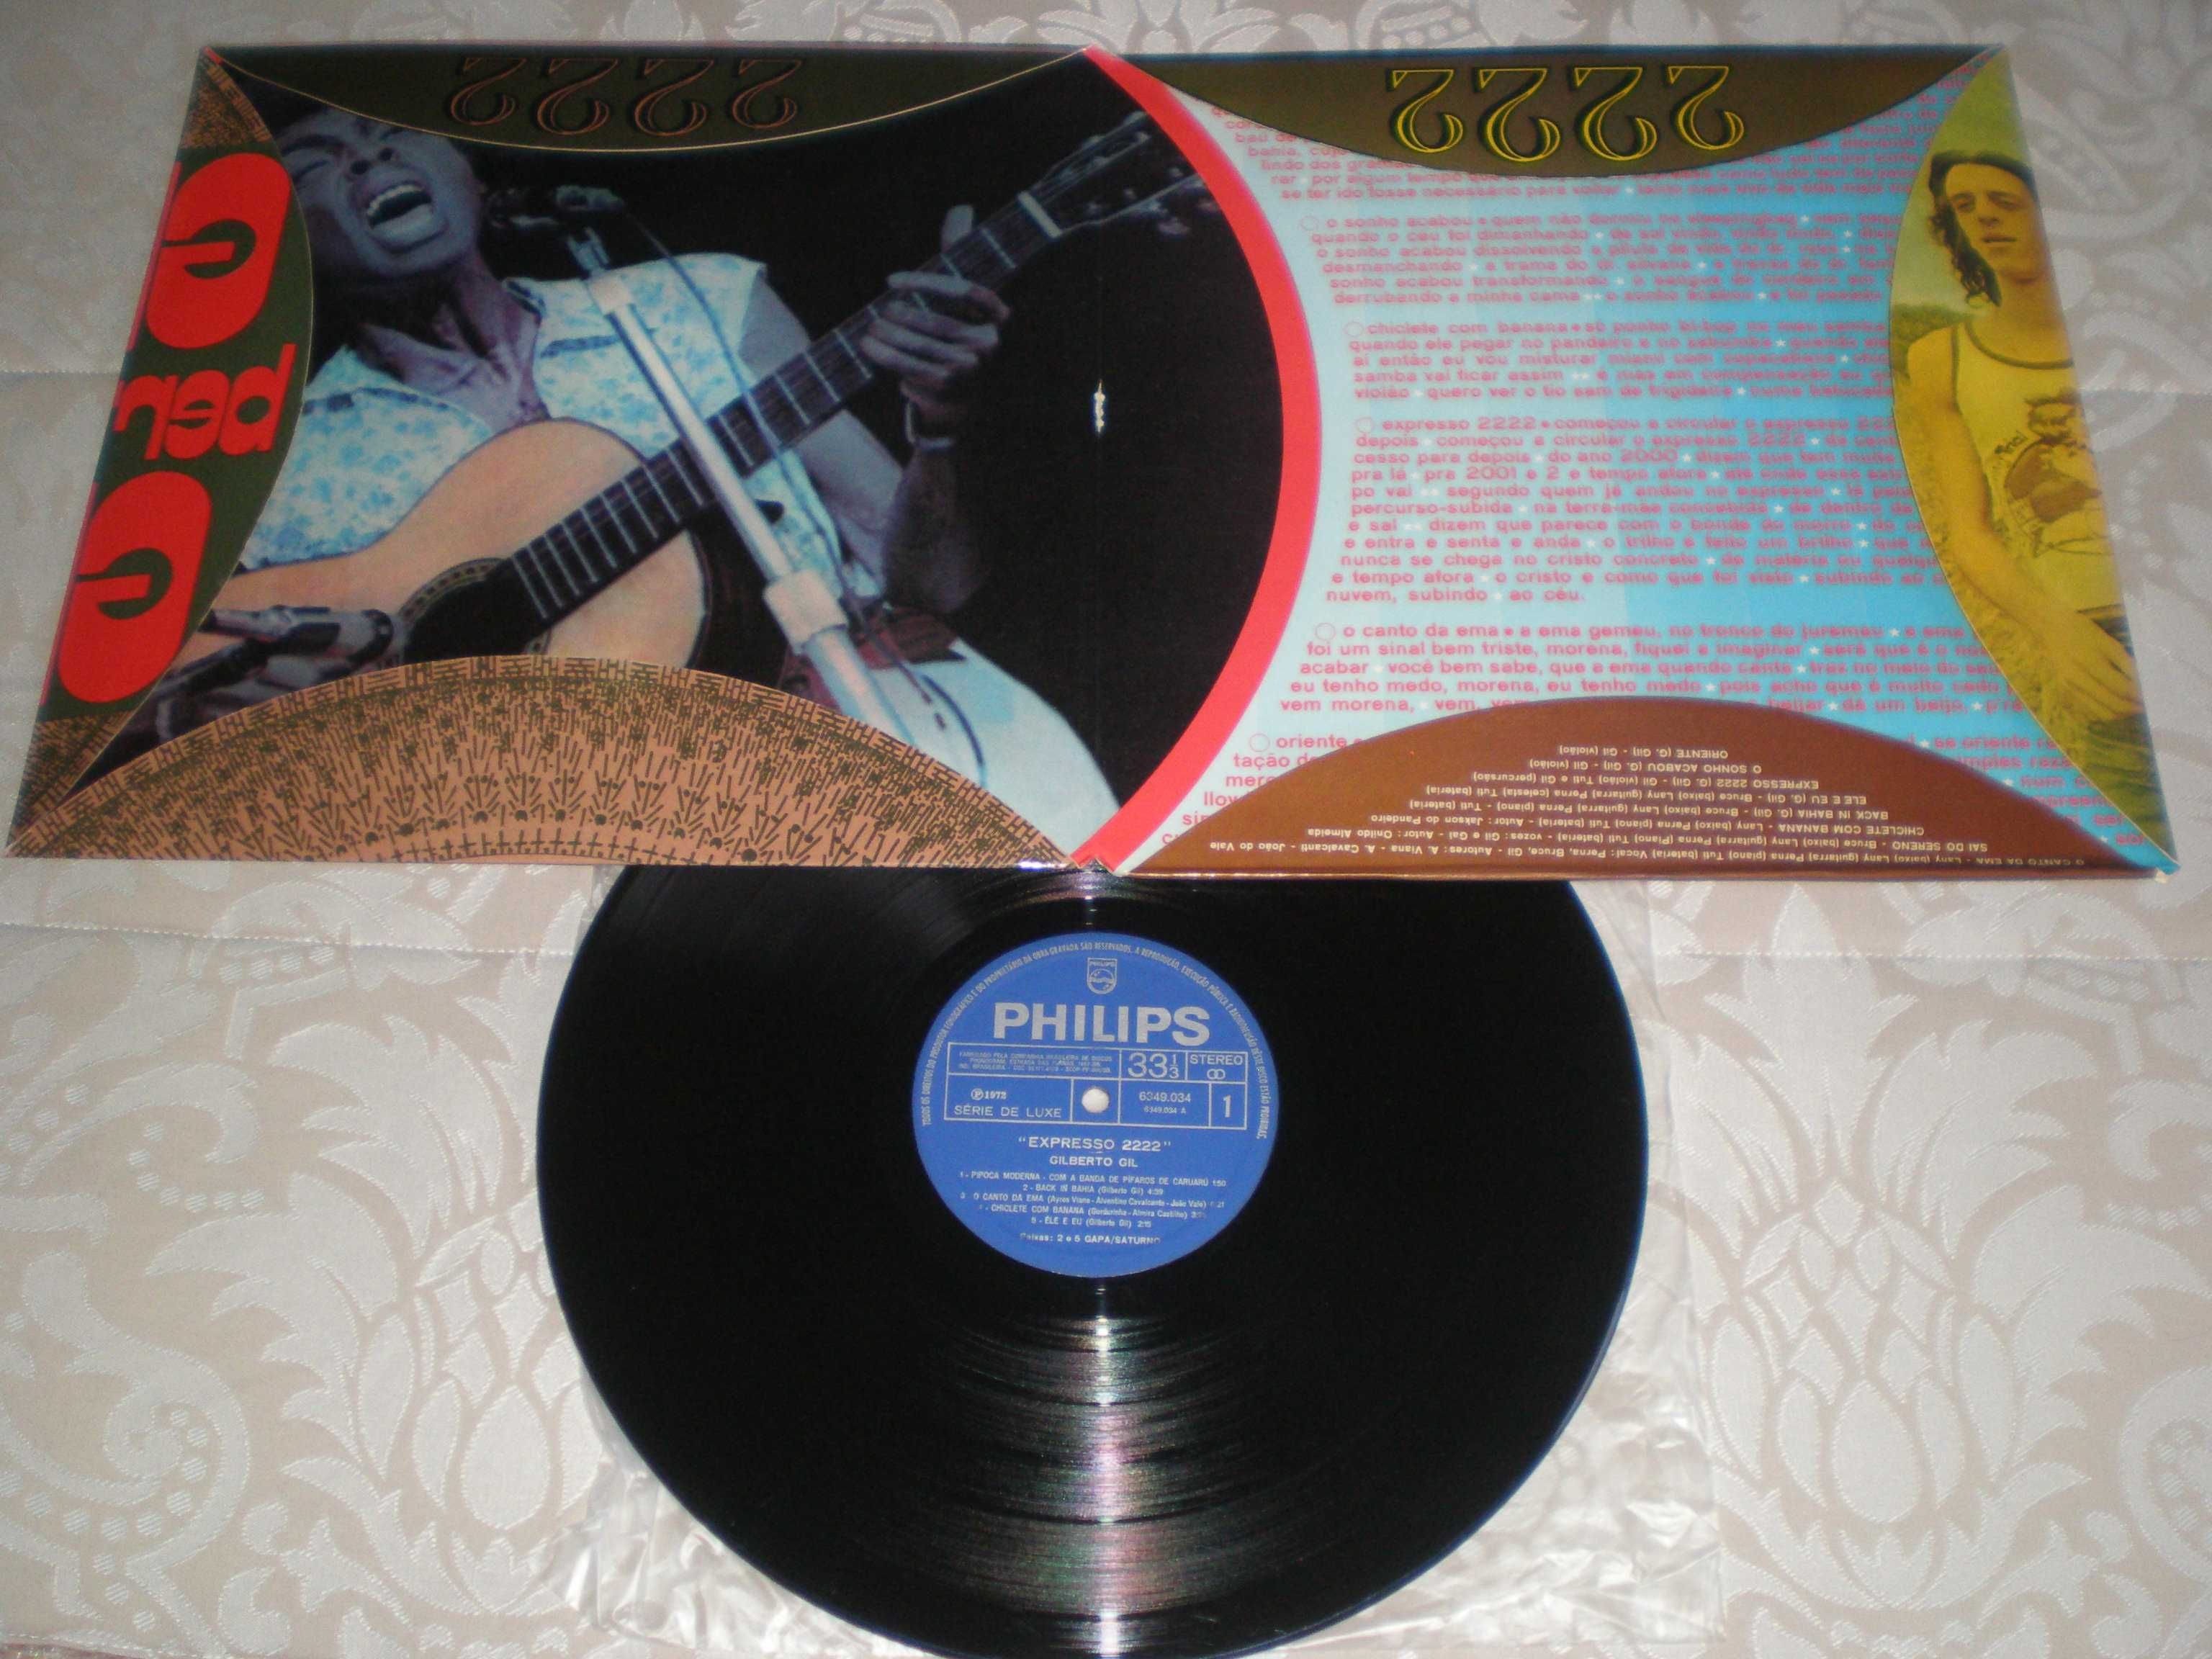 Gilberto Gil - Expresso 2222 - Brasil - Vinil LP